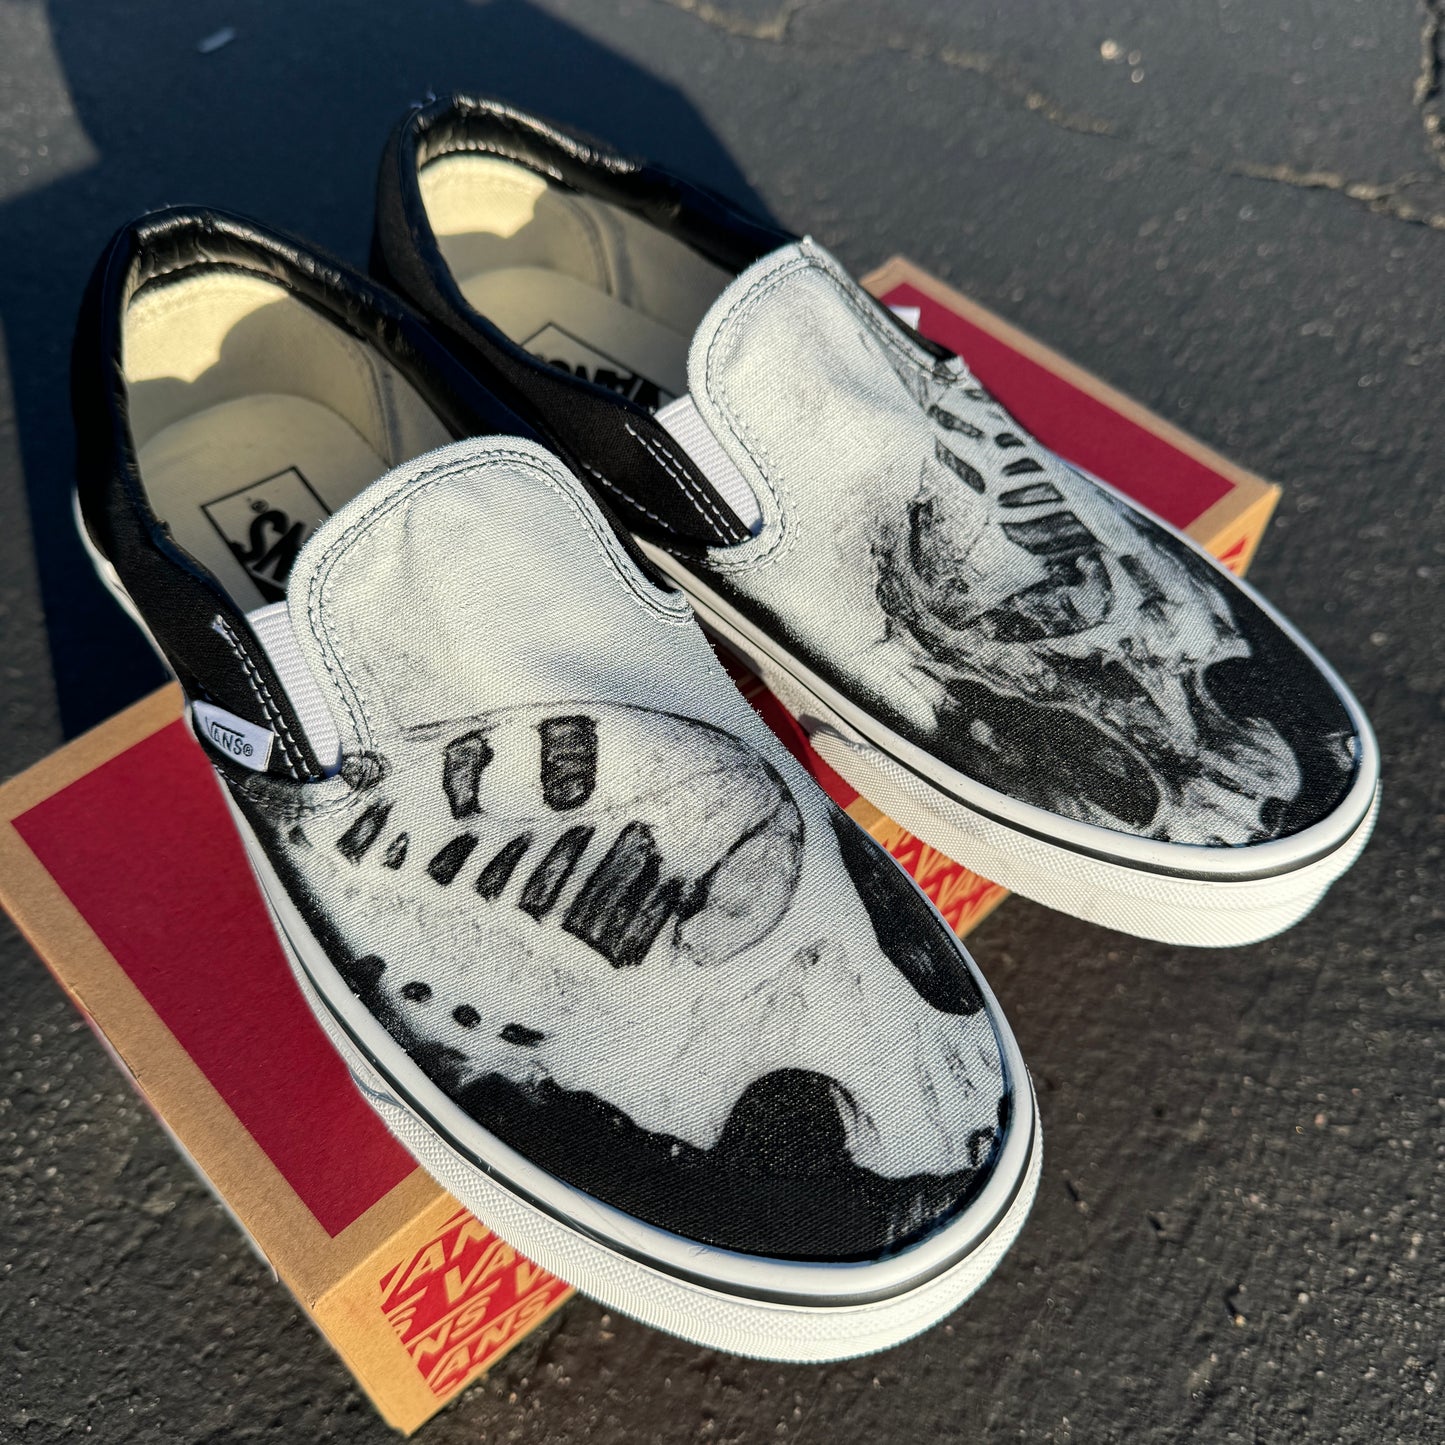 Butterfly and Skull Custom Vans Slip On Shoes - Black and White